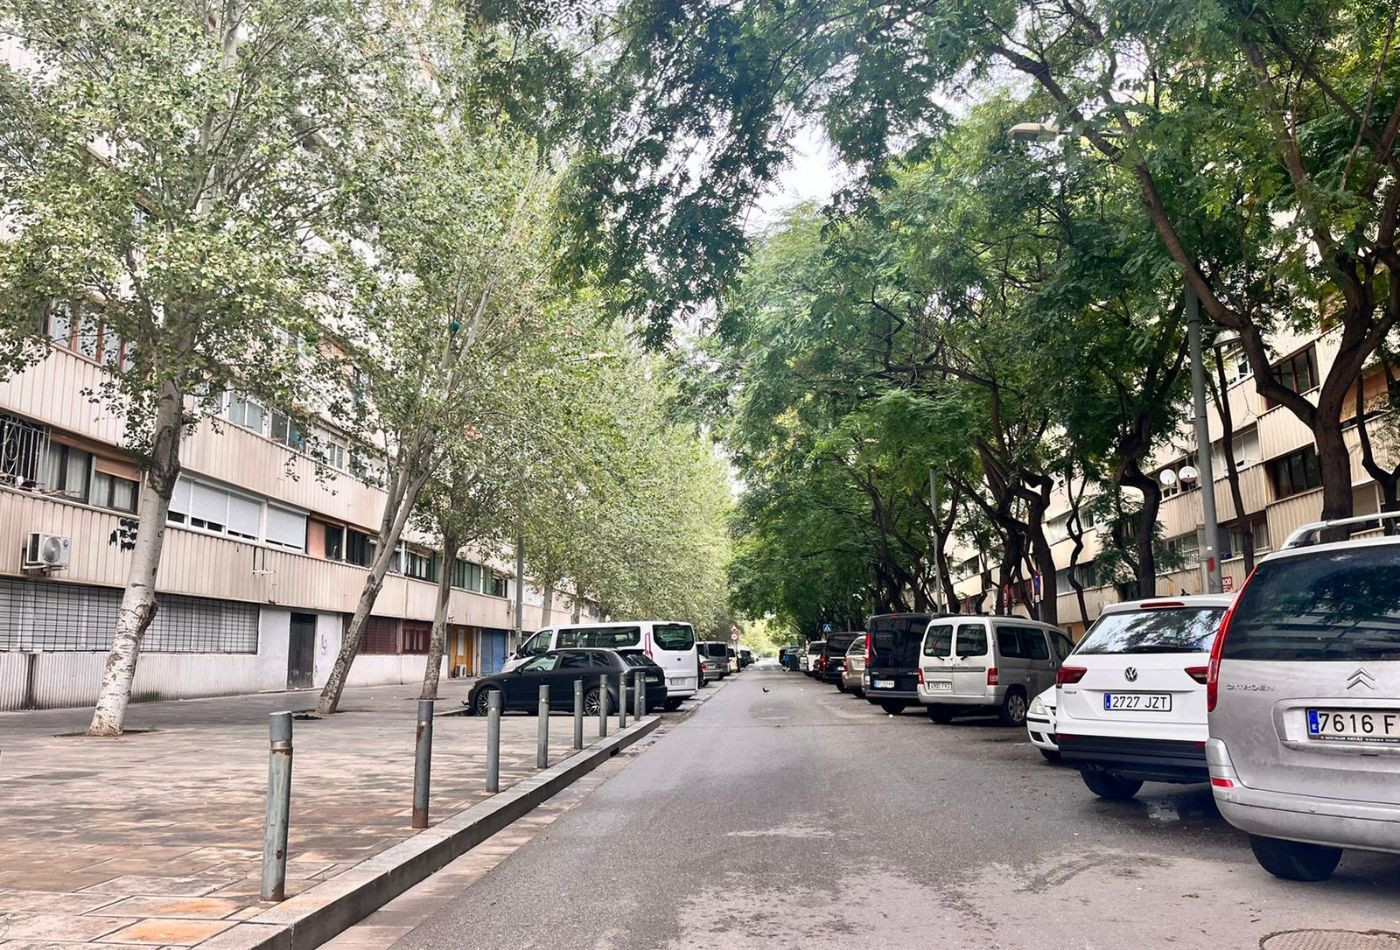 La calle de Levante de la Mina, donde ha habido un muerto durante una discusión / ÁNGELA VÁZQUEZ